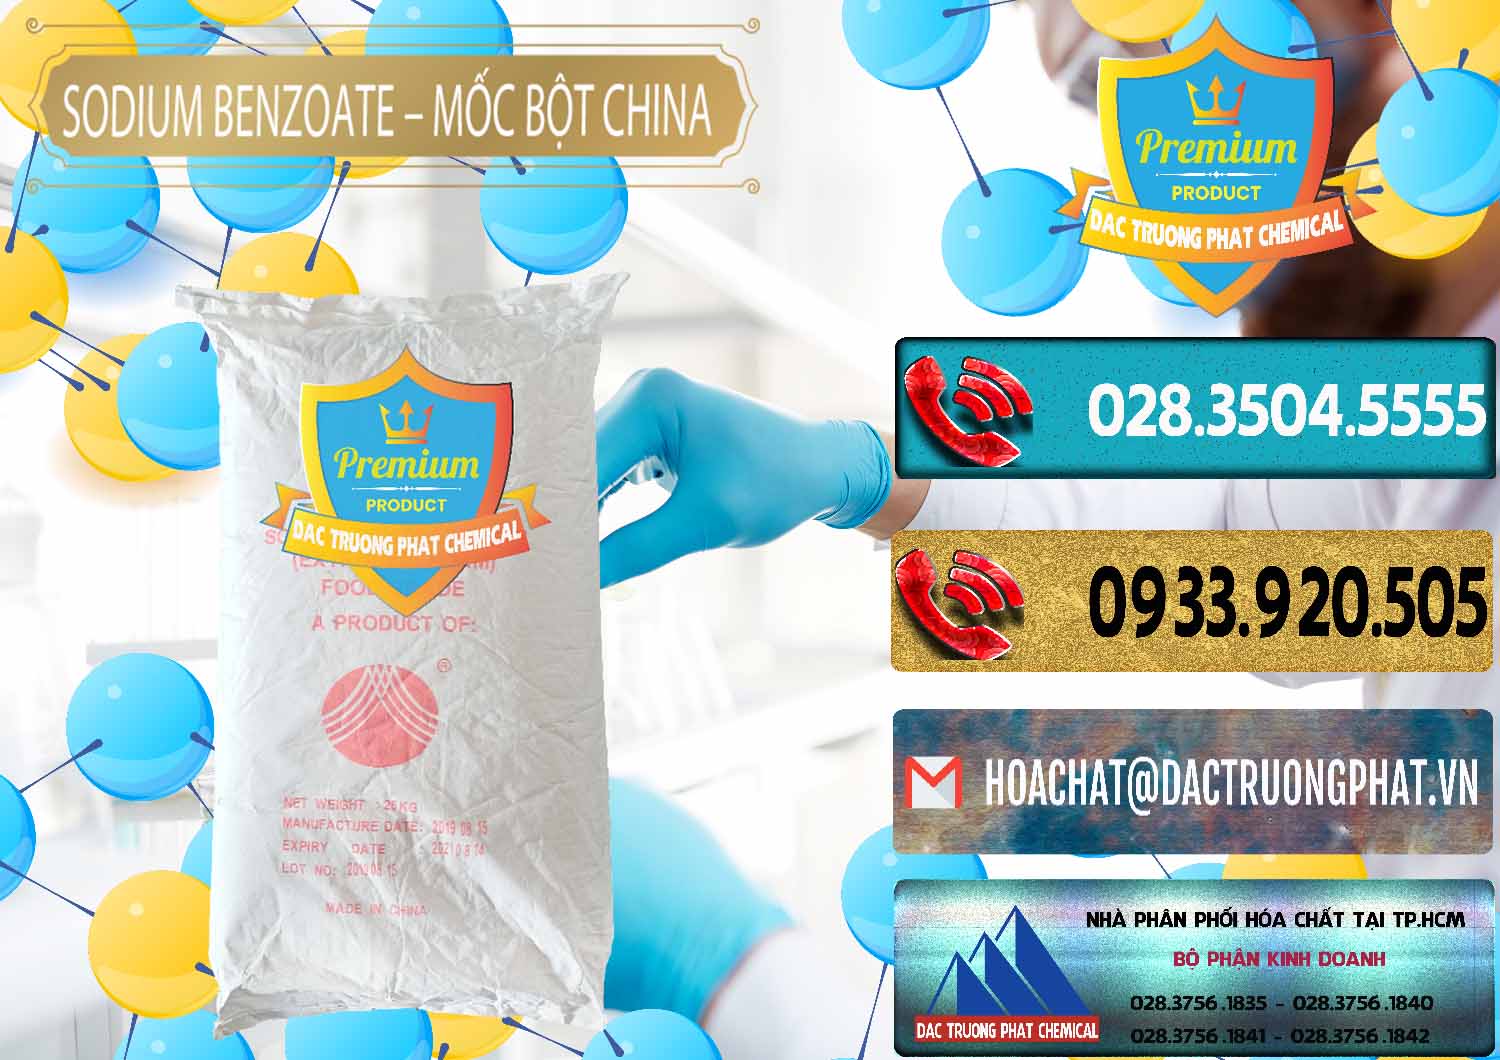 Công ty chuyên cung cấp & bán Sodium Benzoate - Mốc Bột Chữ Cam Food Grade Trung Quốc China - 0135 - Cung cấp và bán hóa chất tại TP.HCM - hoachatdetnhuom.com